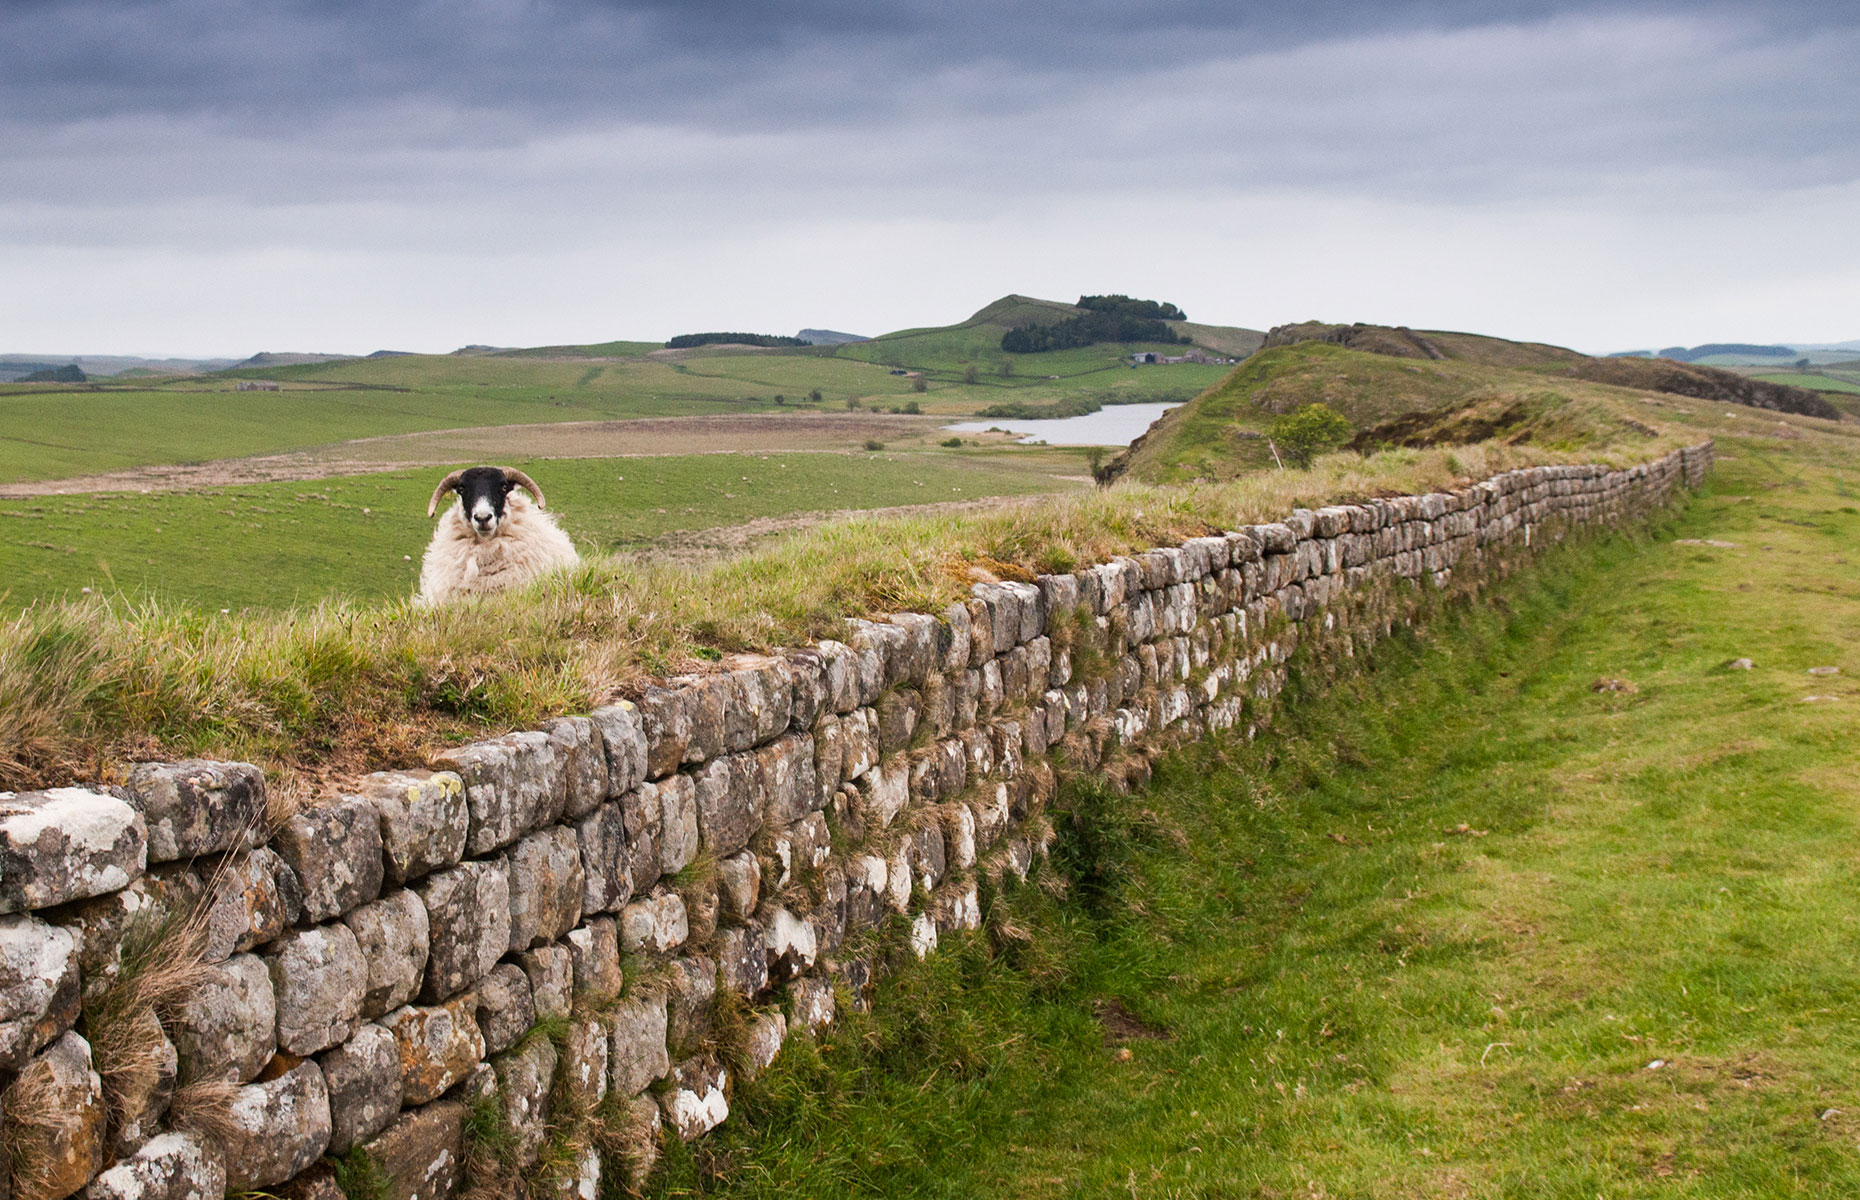 Hadrian's Wall (Image: Joe Dunckley/Shutterstock)